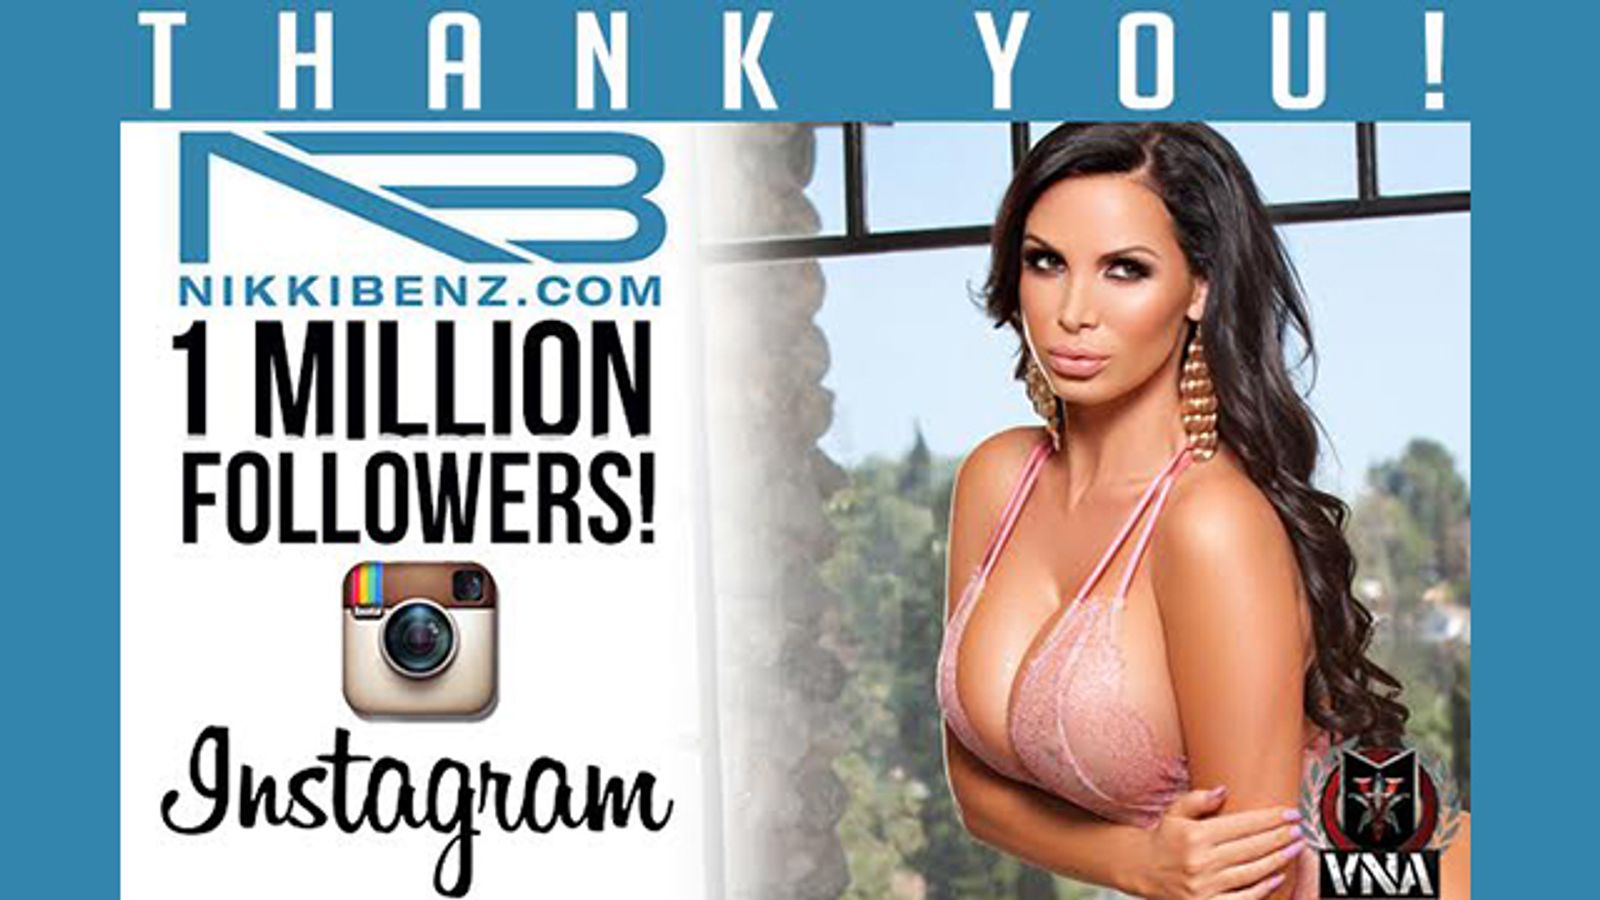 Nikki Benz Attains 1 Million Followers on Instagram